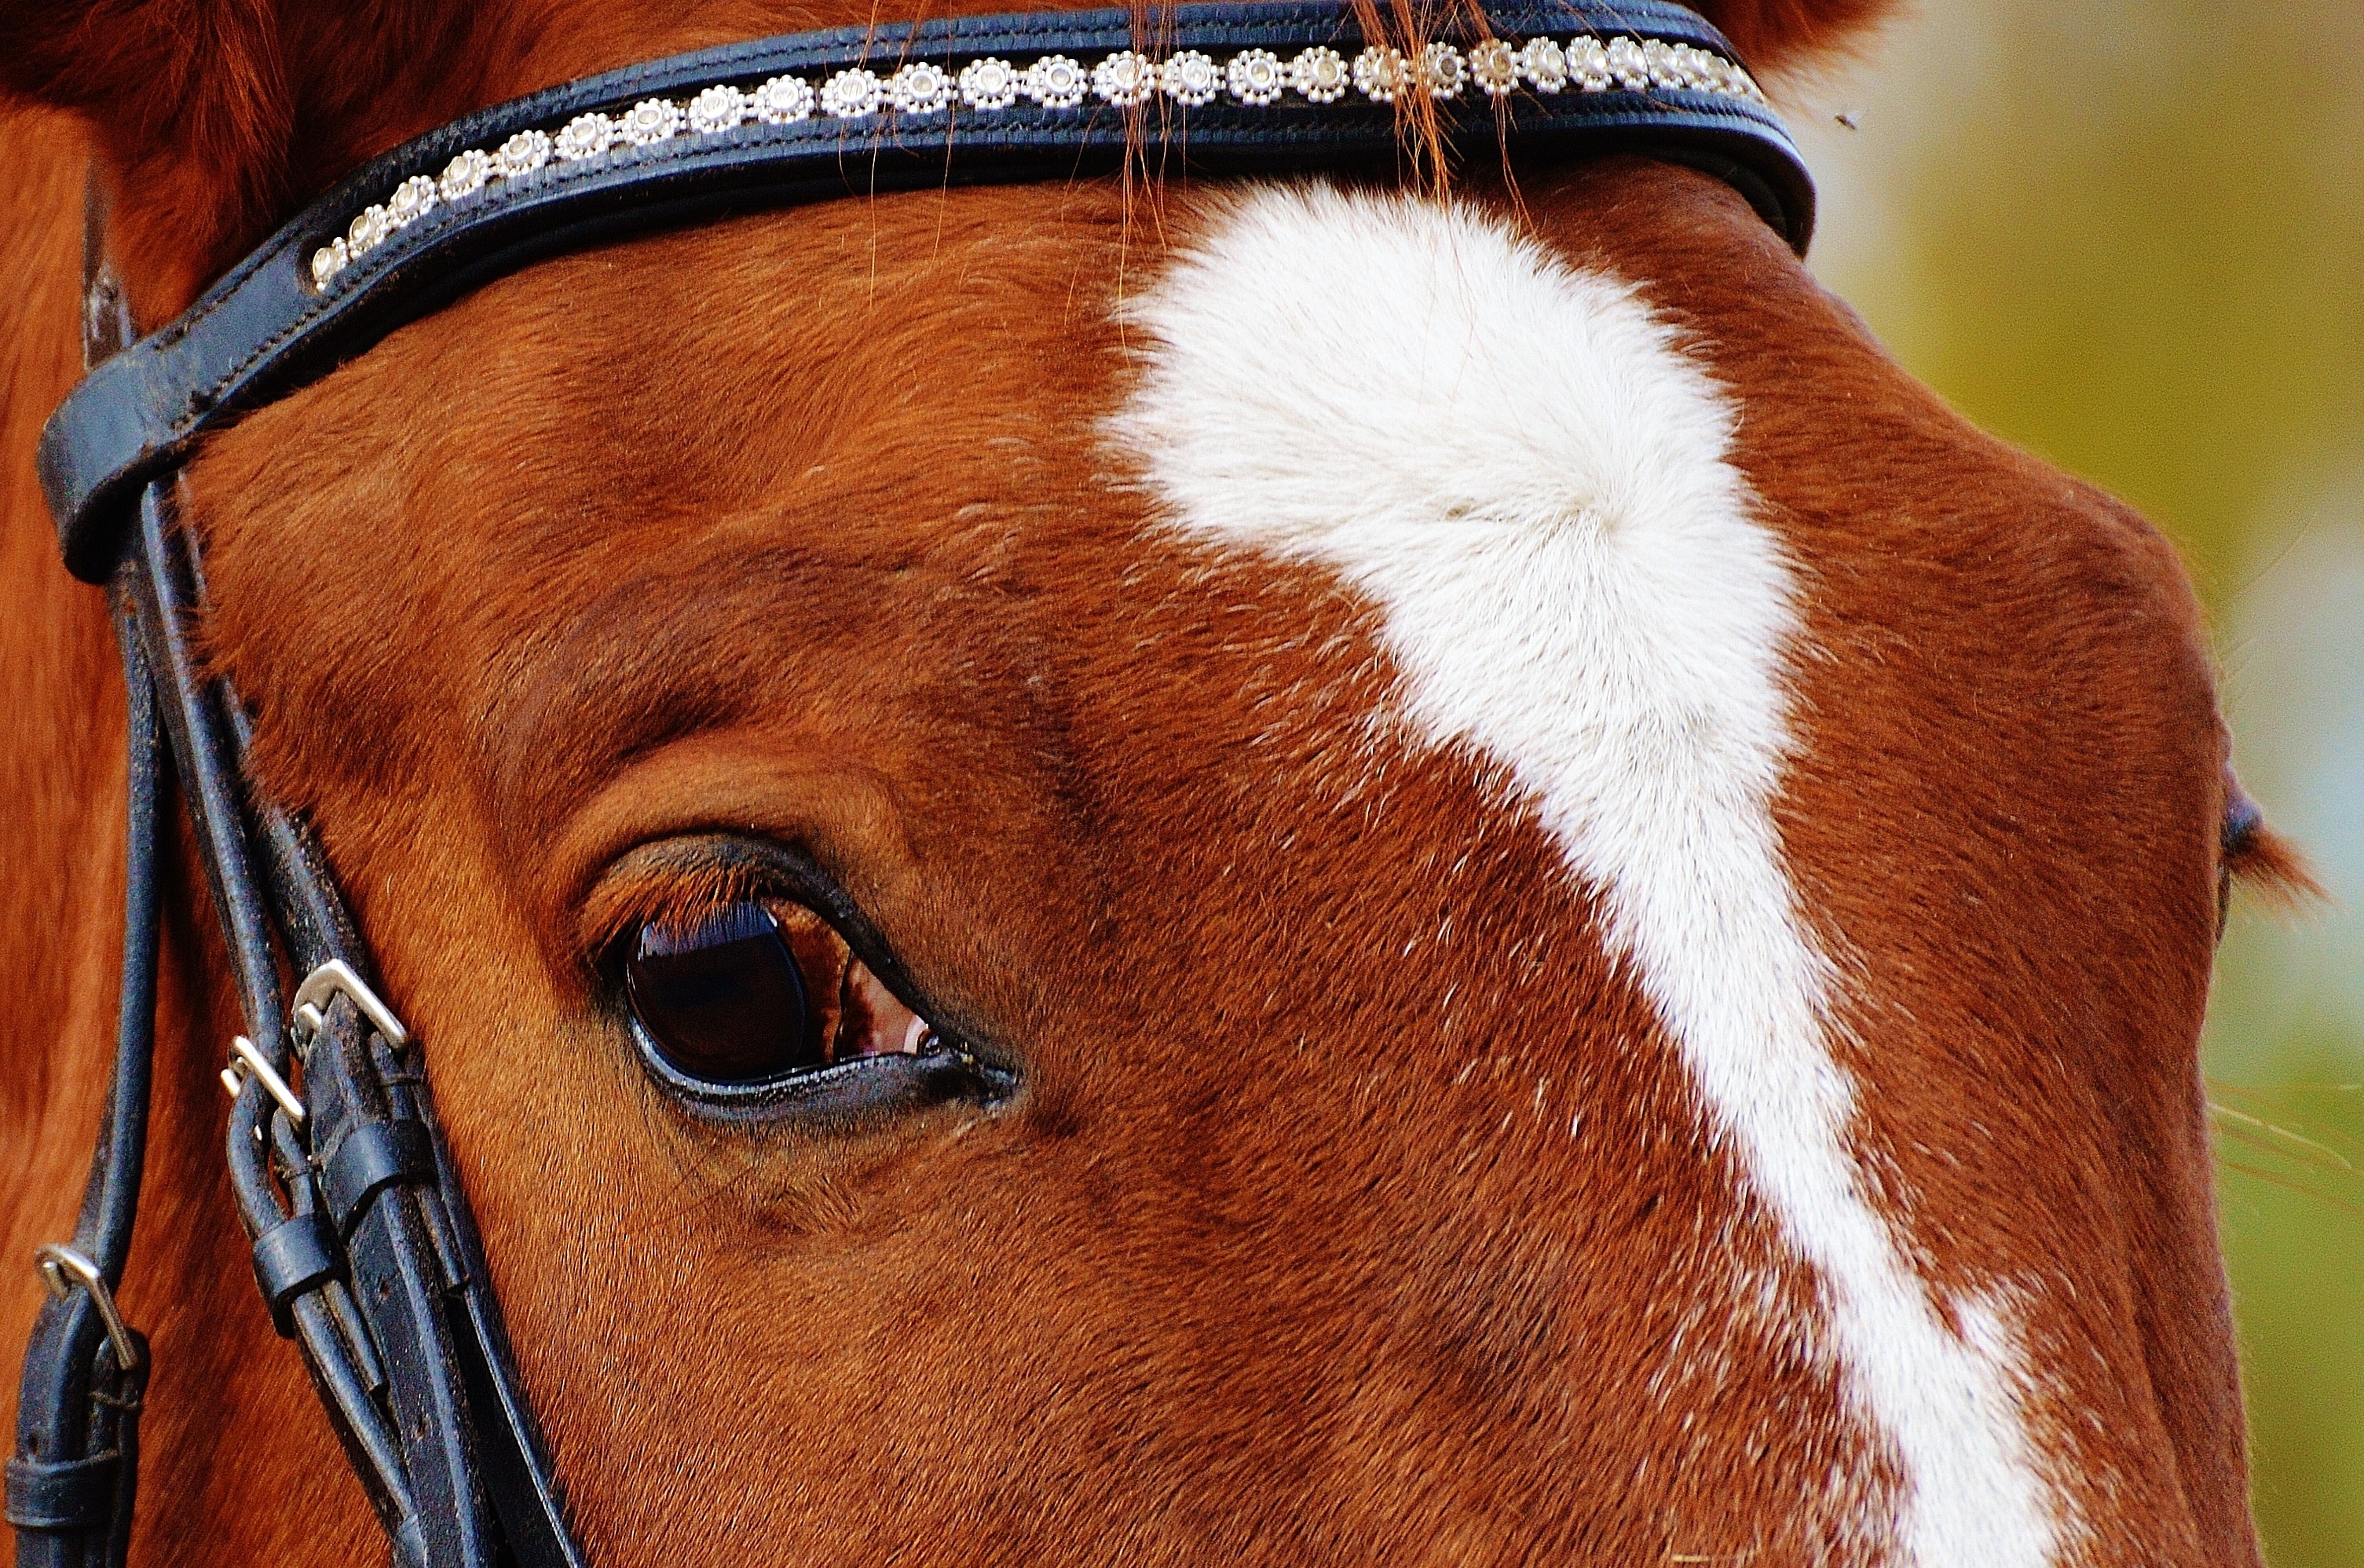 Reiterhof, Brown, Horse, Ride, Animal, one animal, close-up